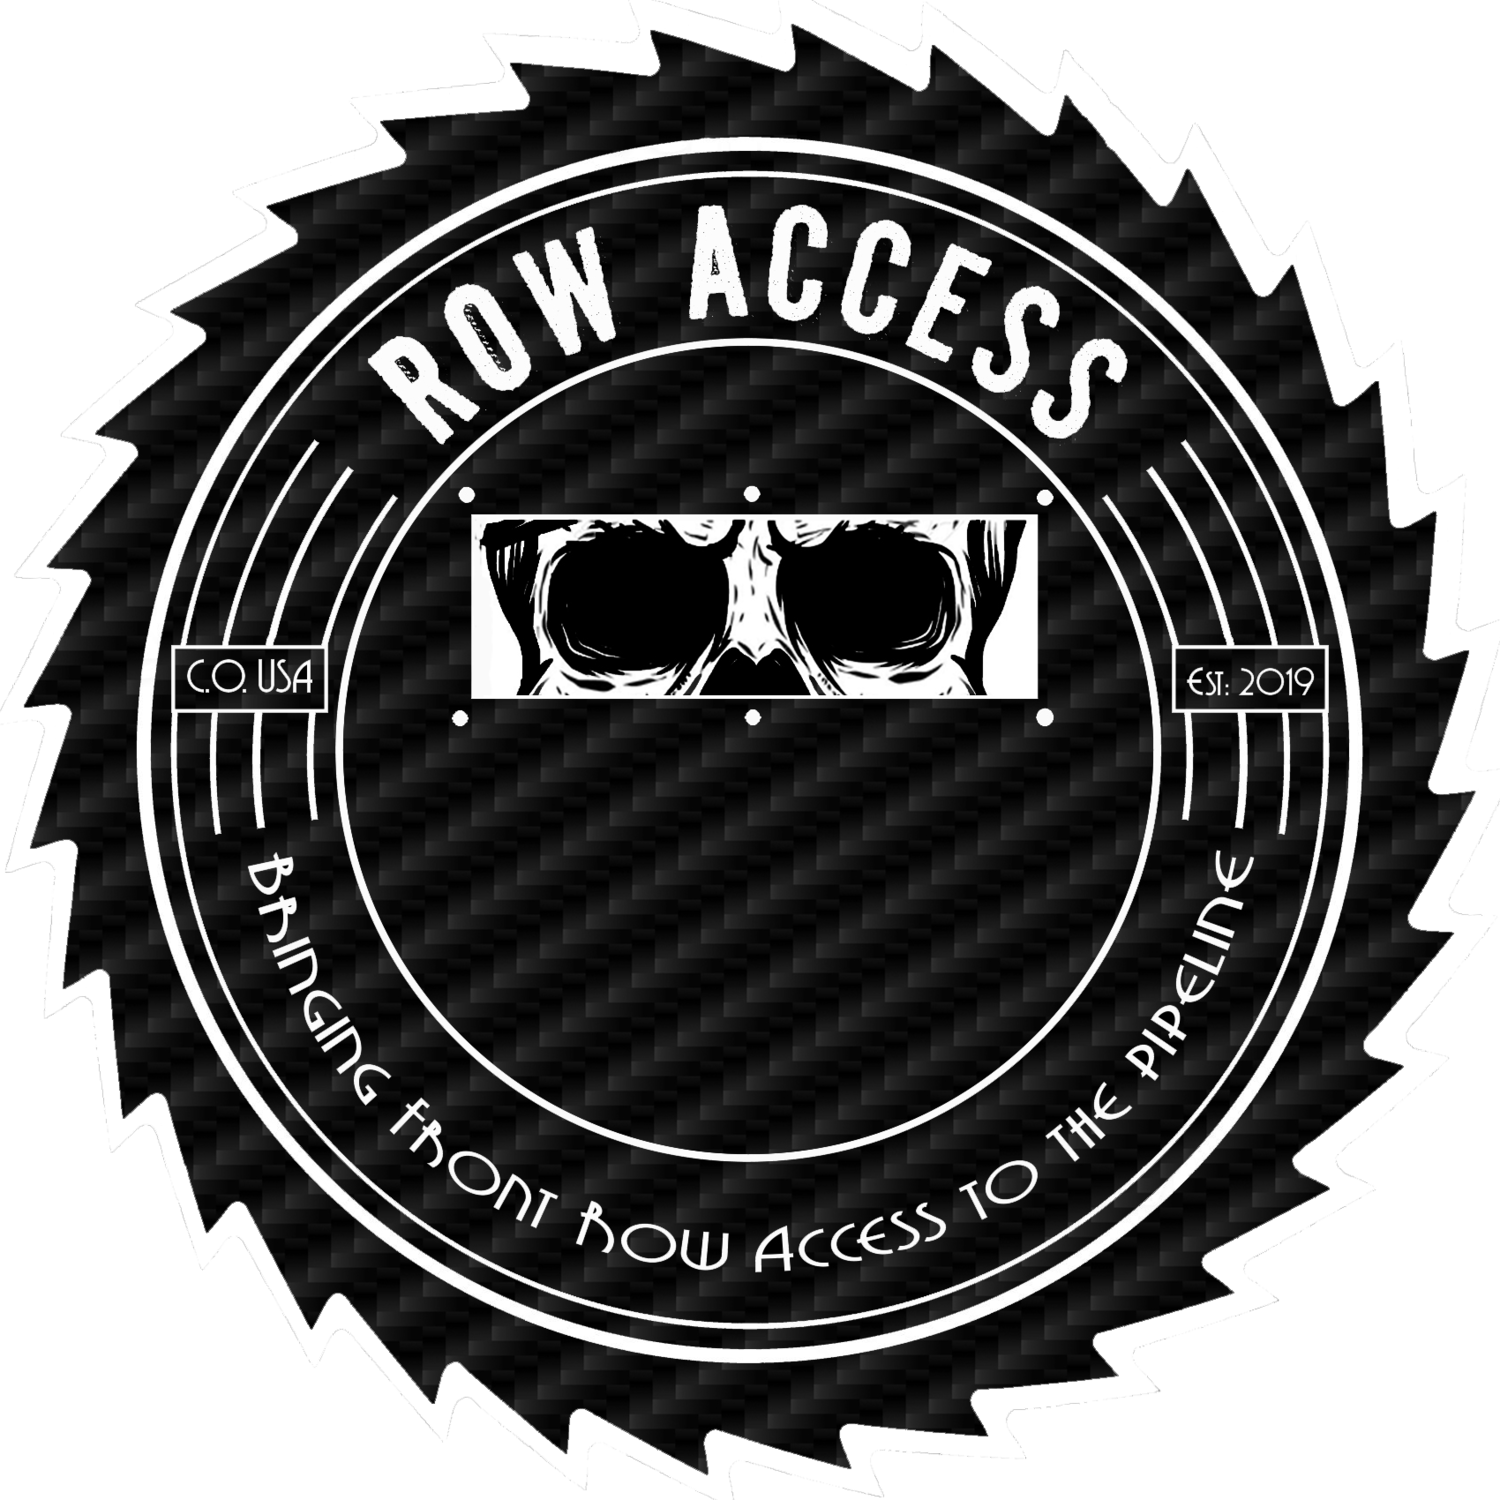 Row Access